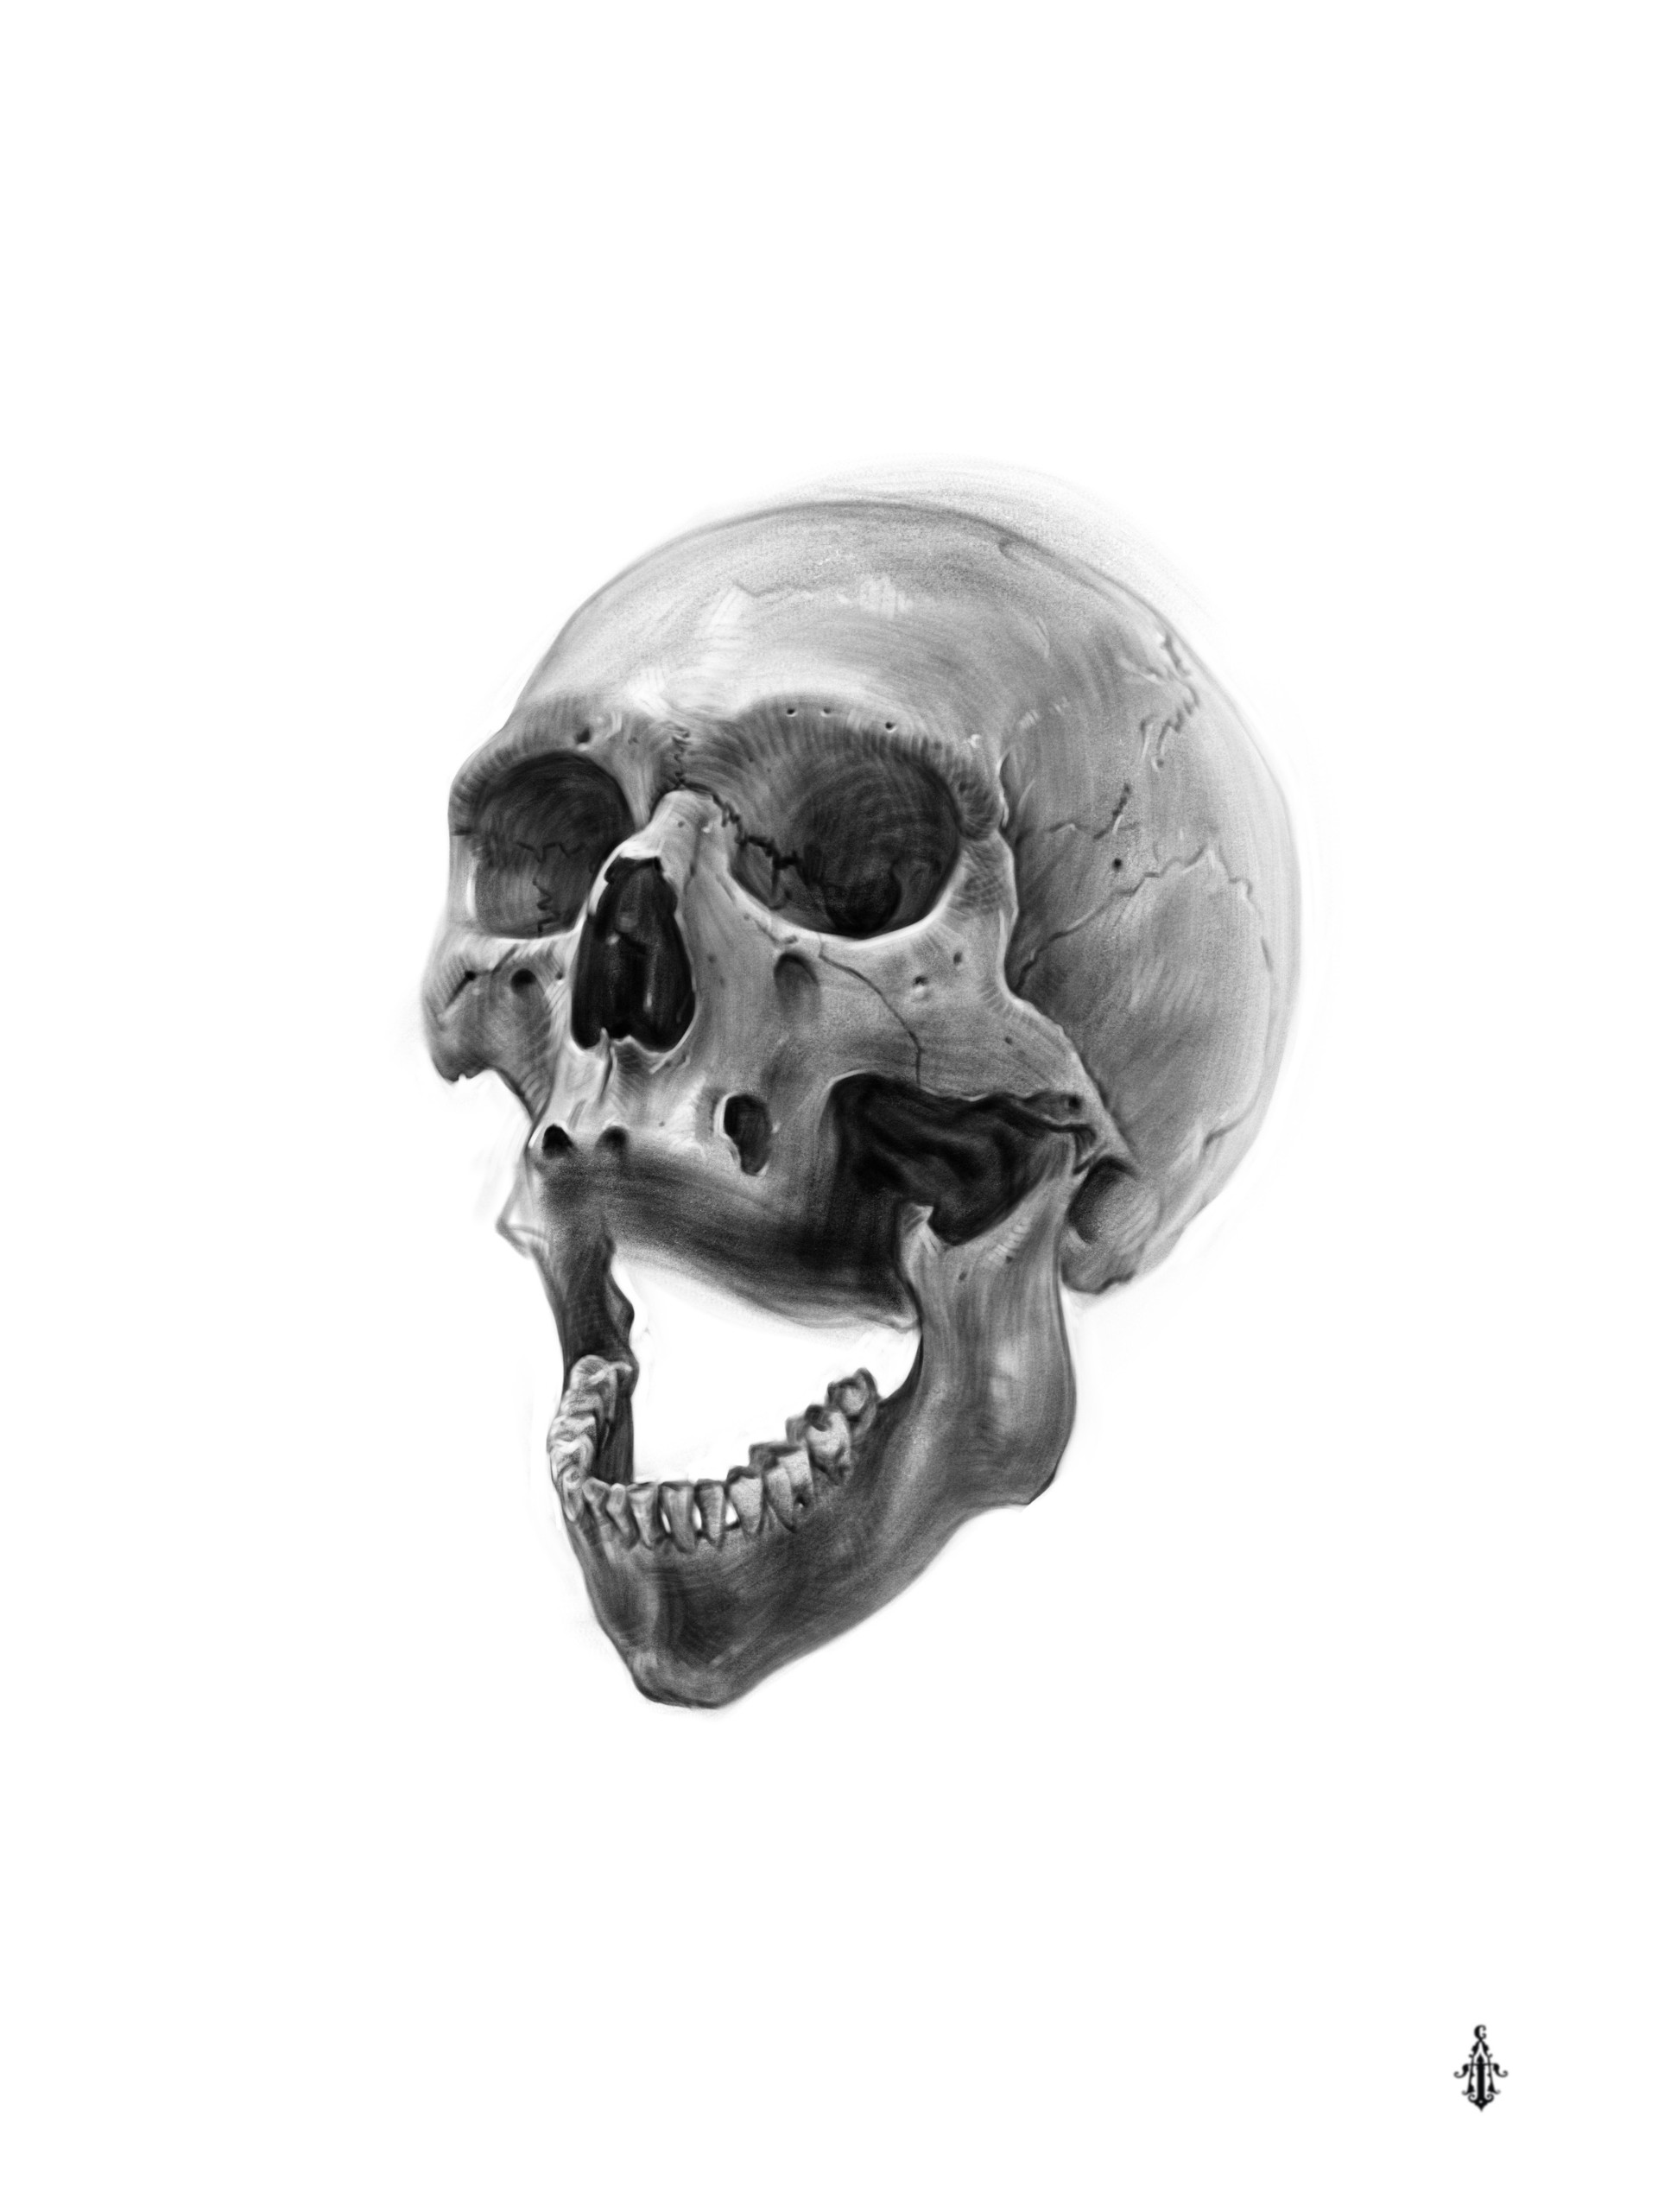 Procreate art Draw a human skull.